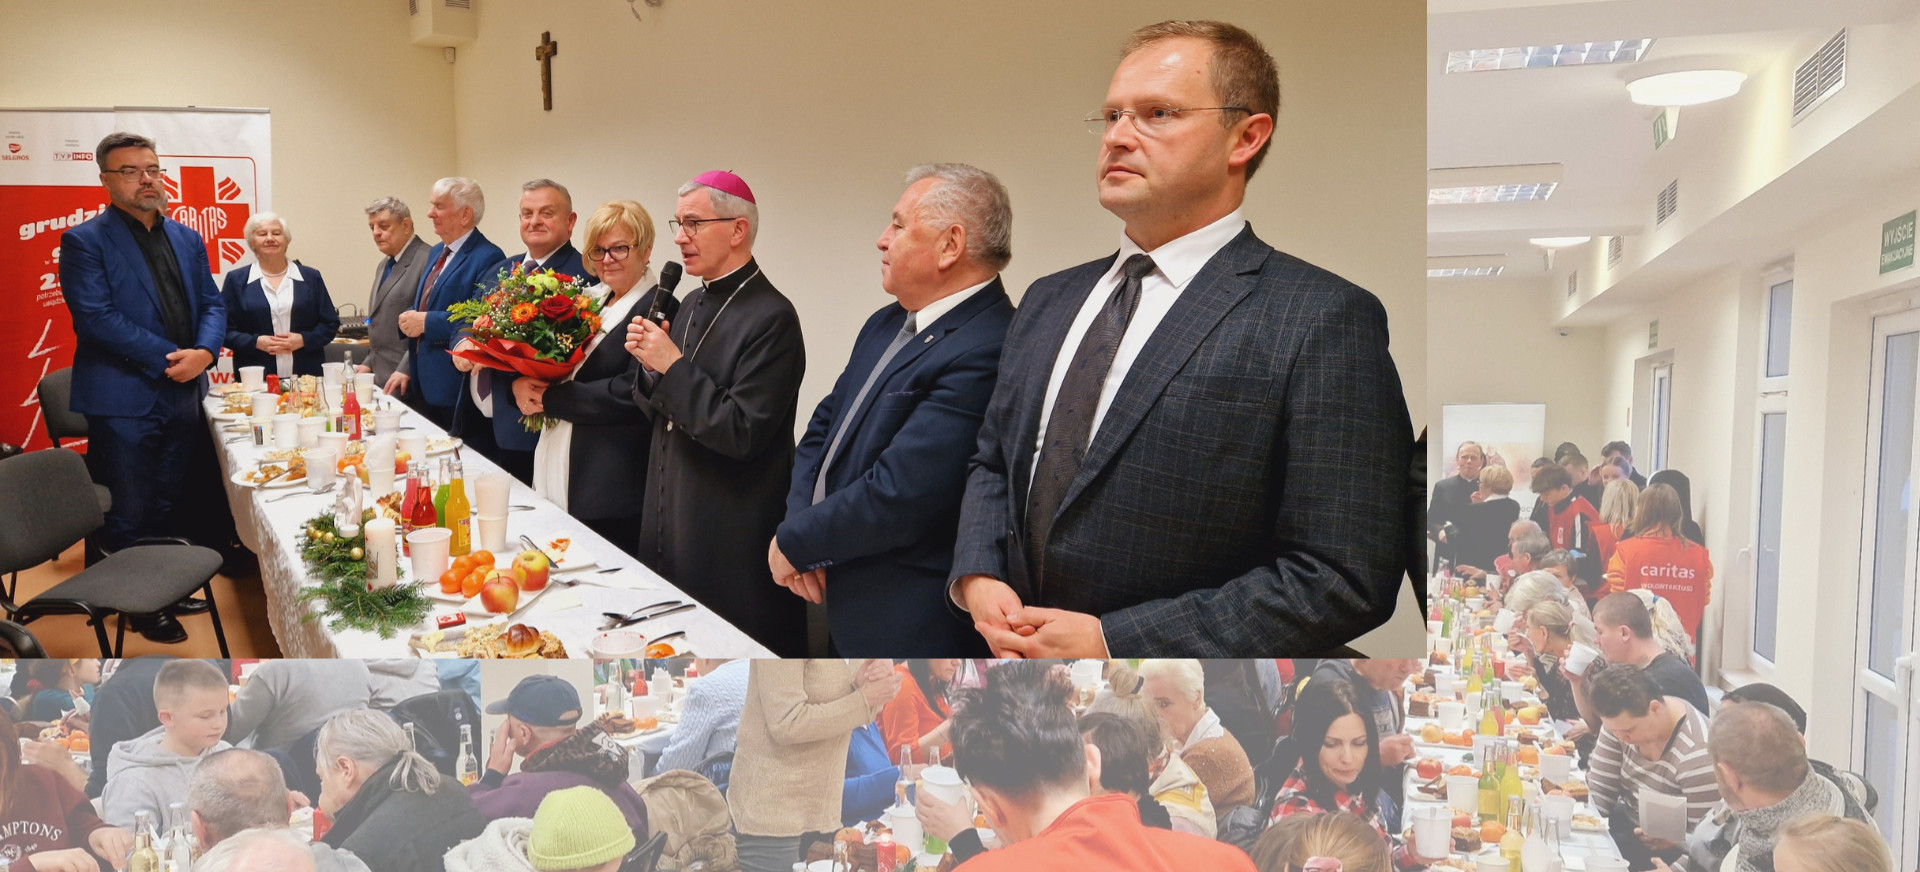 DEICEZJA RZESZOWSKA. Ponad 200 osób na Wigilii Caritas Diecezji Rzeszowskiej (ZDJĘCIA)